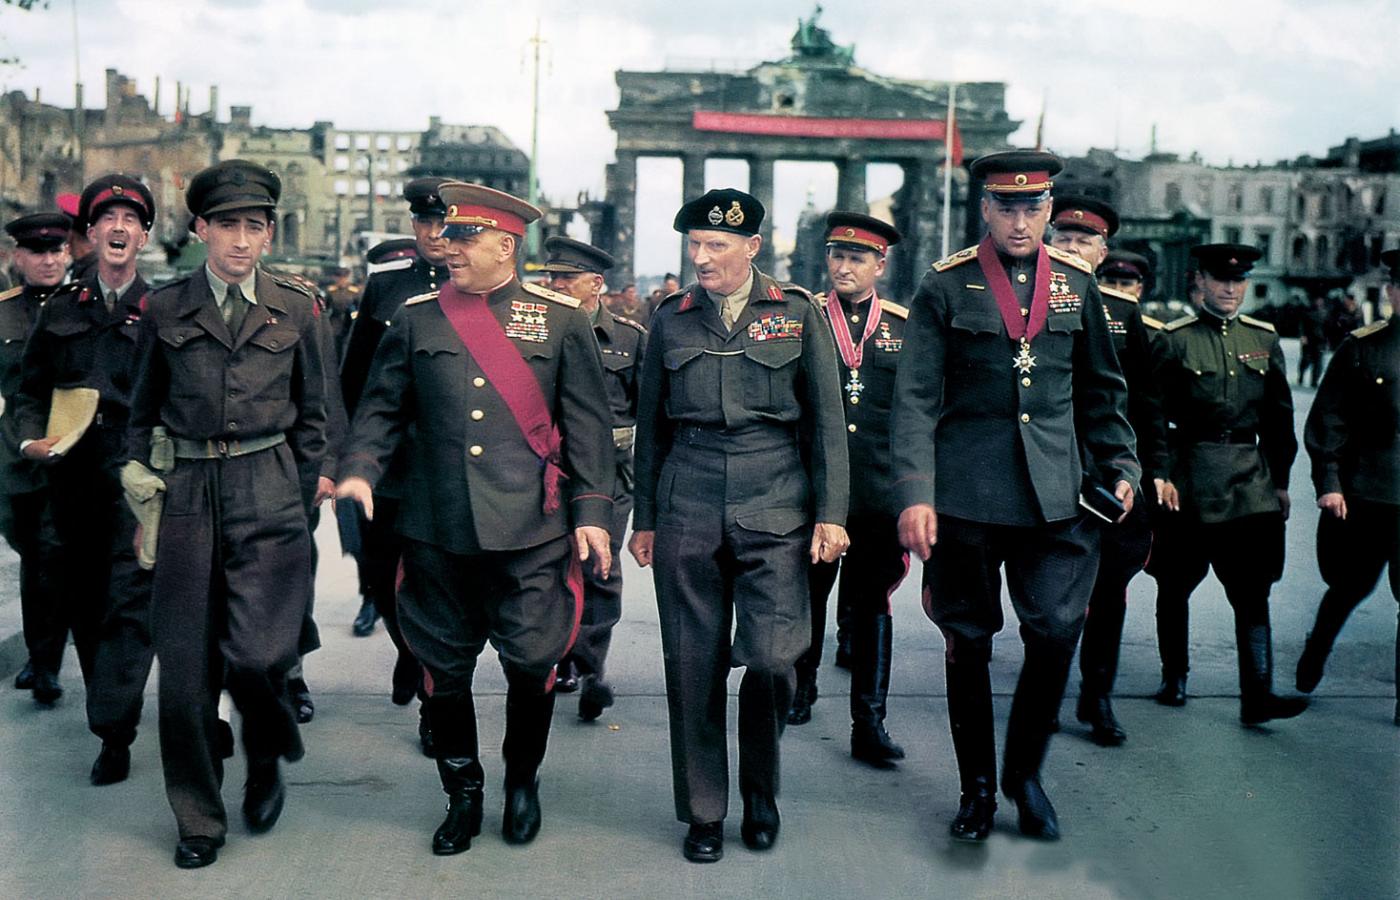 Berlin 1945 r. Zwycięscy marszałkowie przed Bramą Brandenburską. W pierwszym rzędzie od prawej: Konstanty Rokossowski, Bernard Montgomery i Gieorgij Żukow.